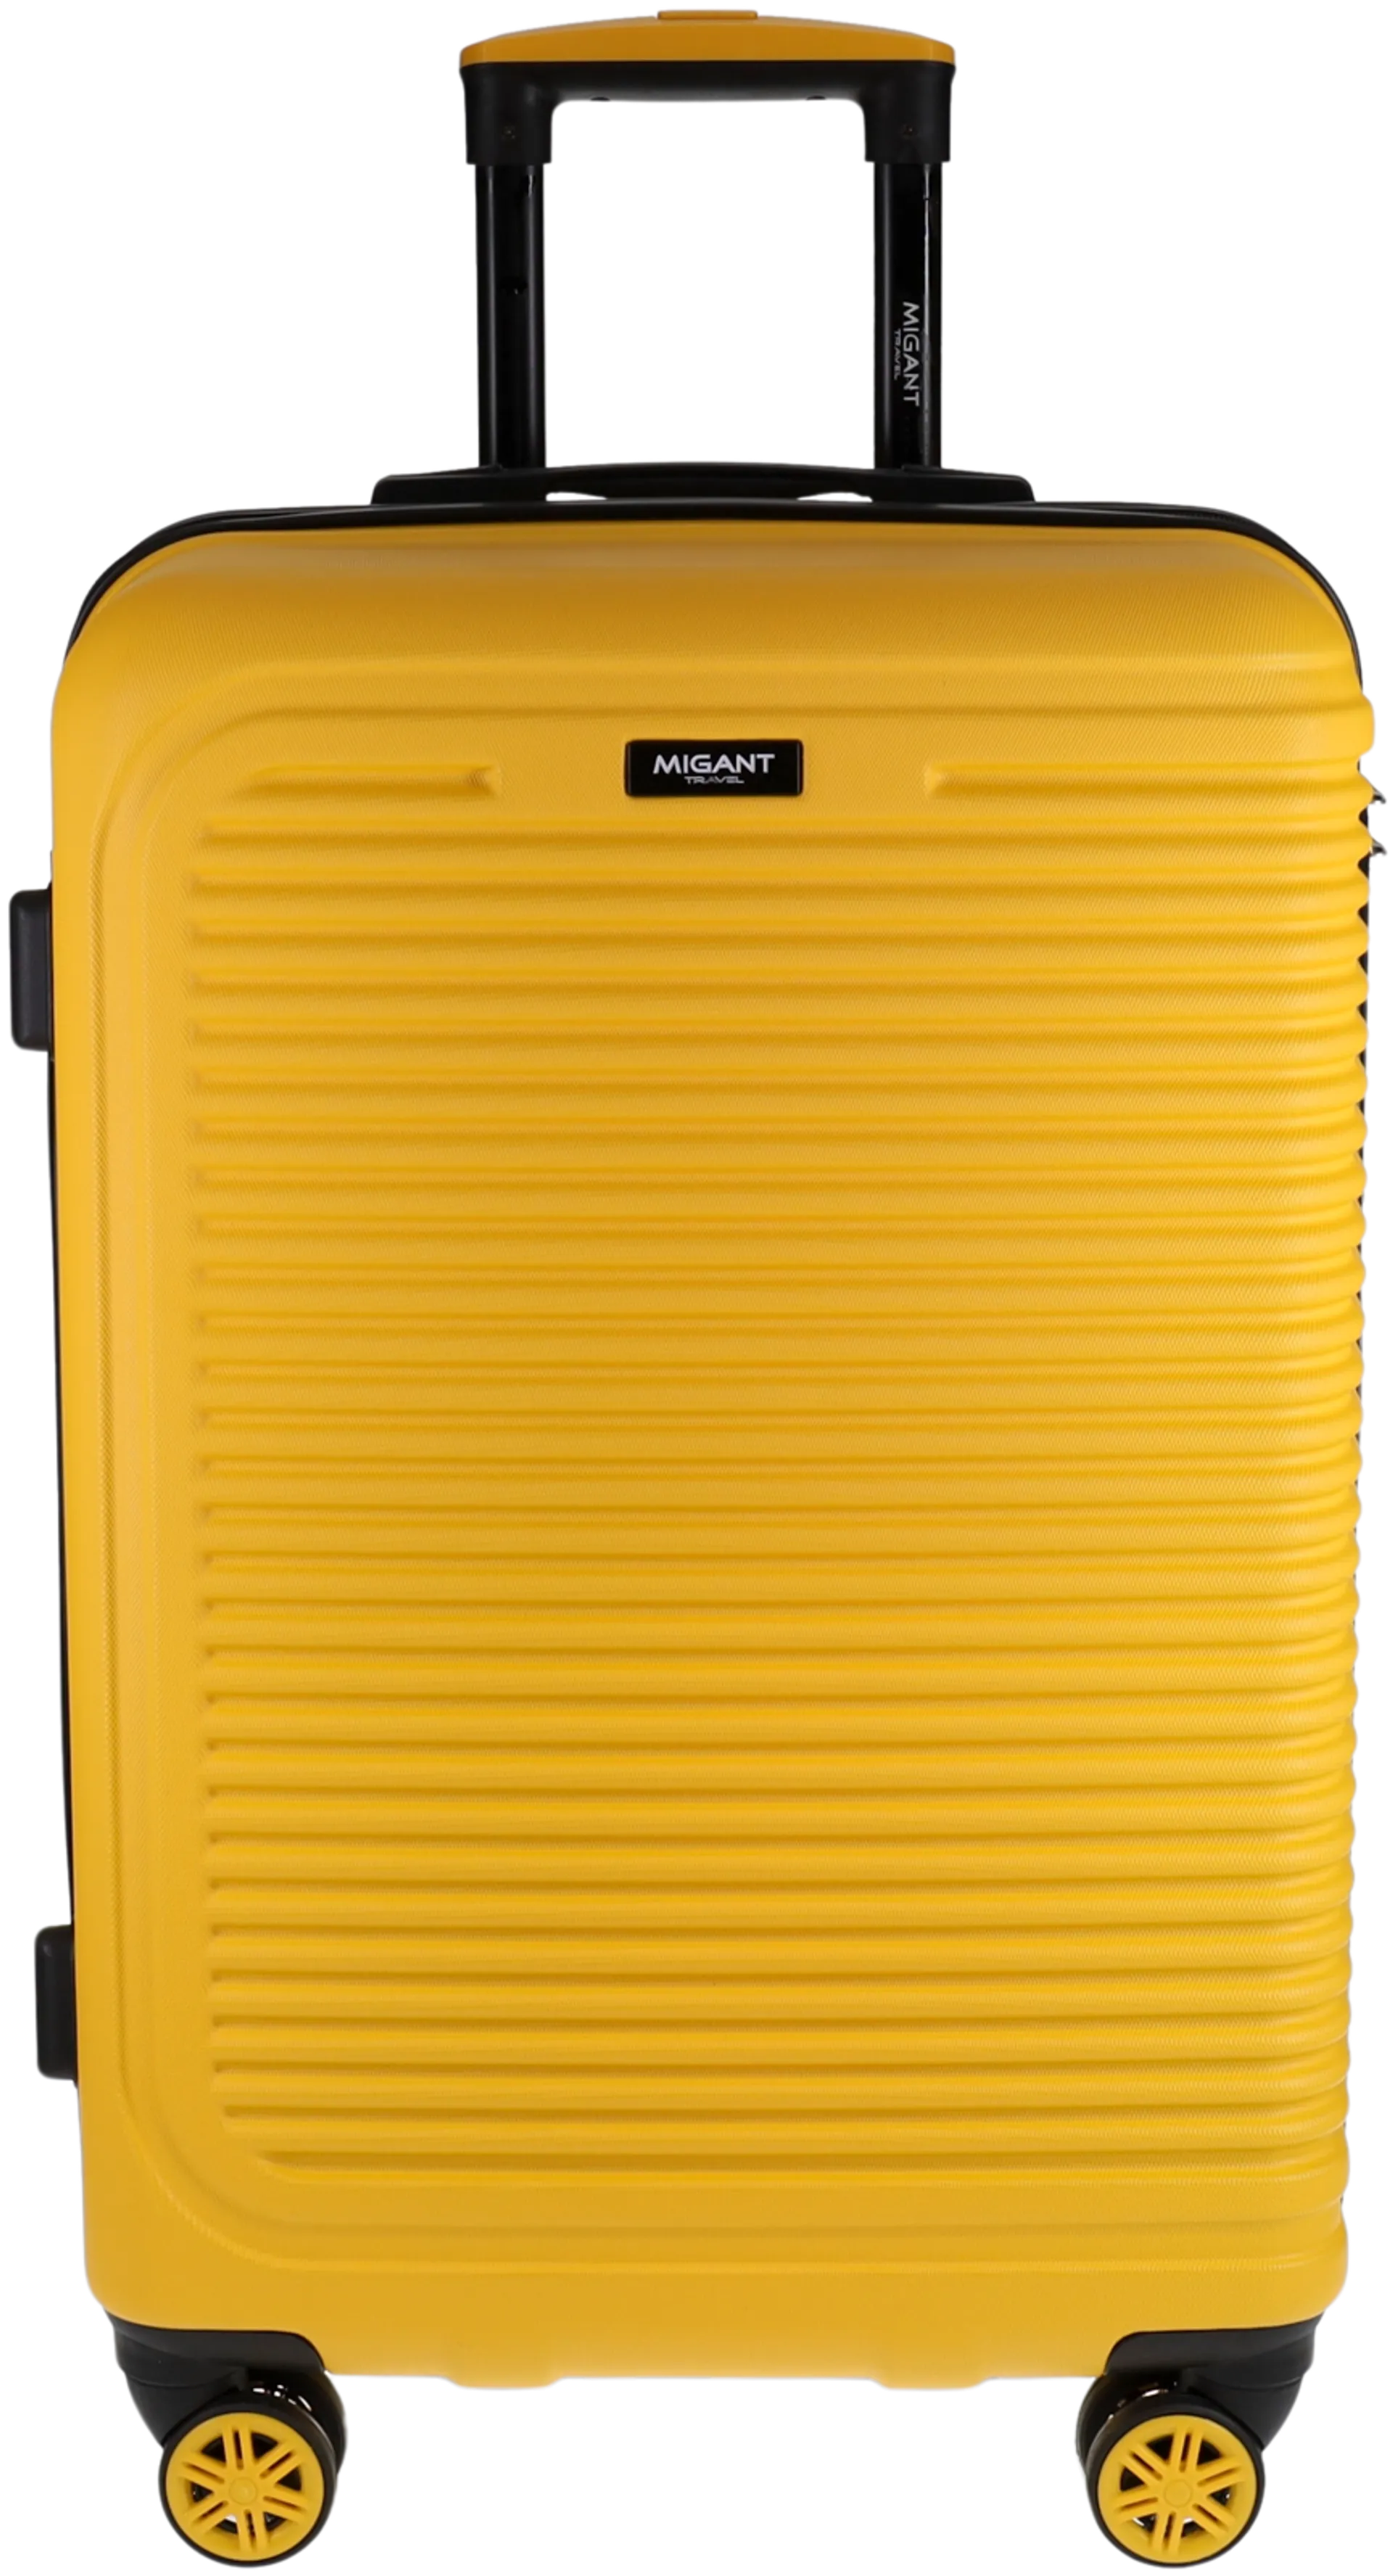 Migant matkalaukku MGT-27 65 cm keltainen - 1